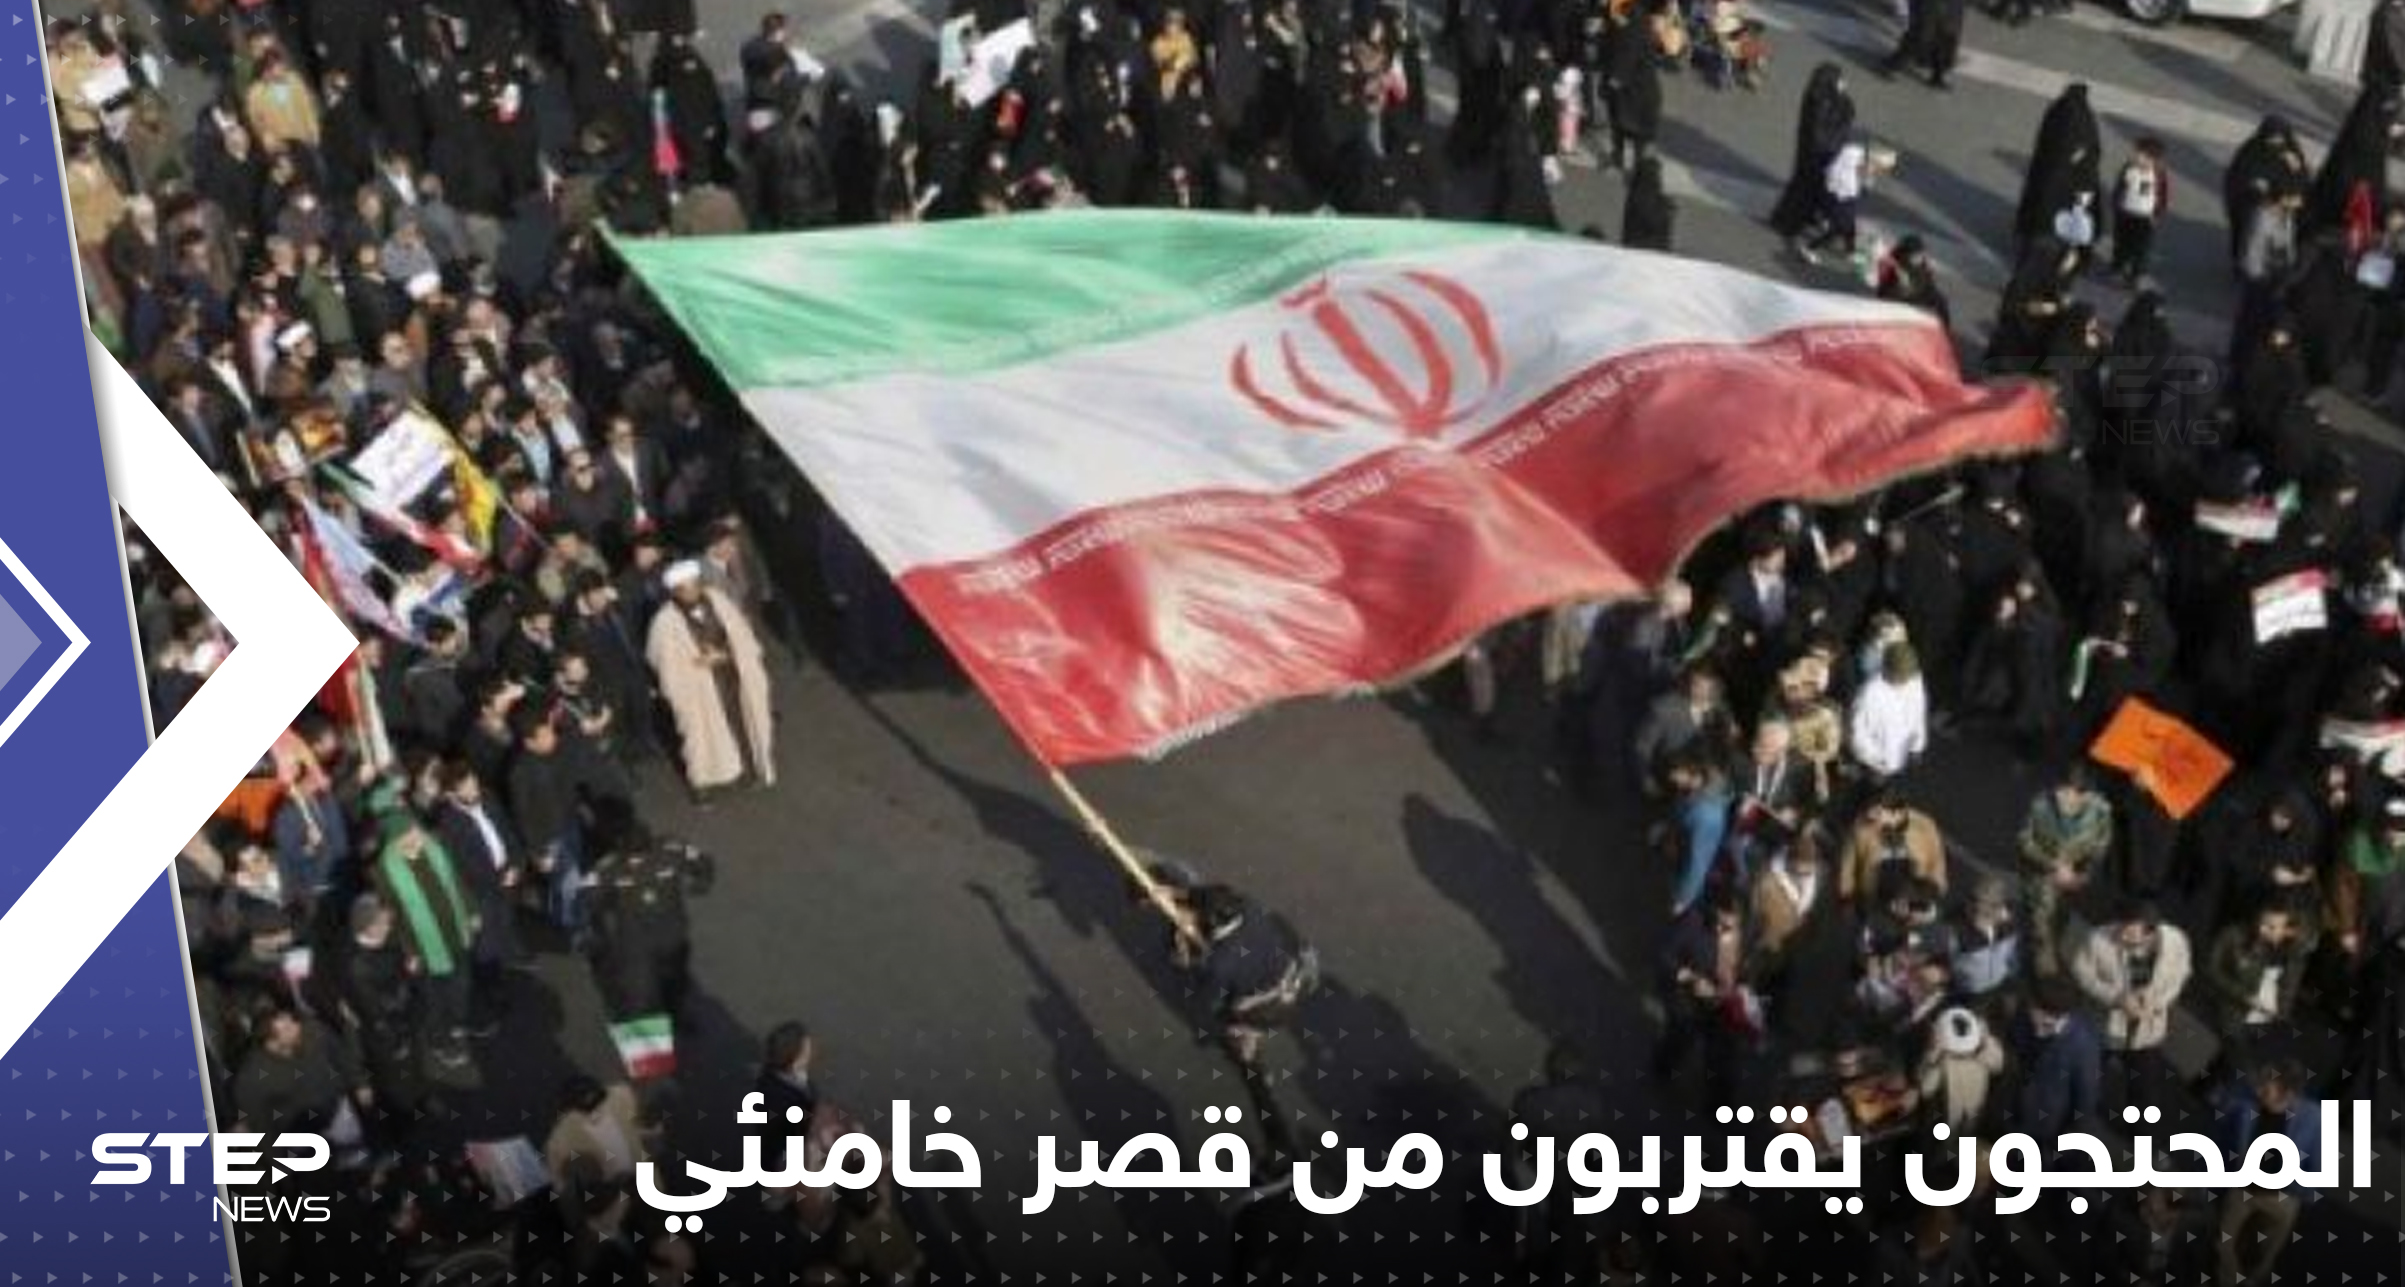 بالفيديو|| المحتجون في إيران يقتربون من قصر خامنئي.. وانشقاقات في صفوف الحرس الثوري والجيش